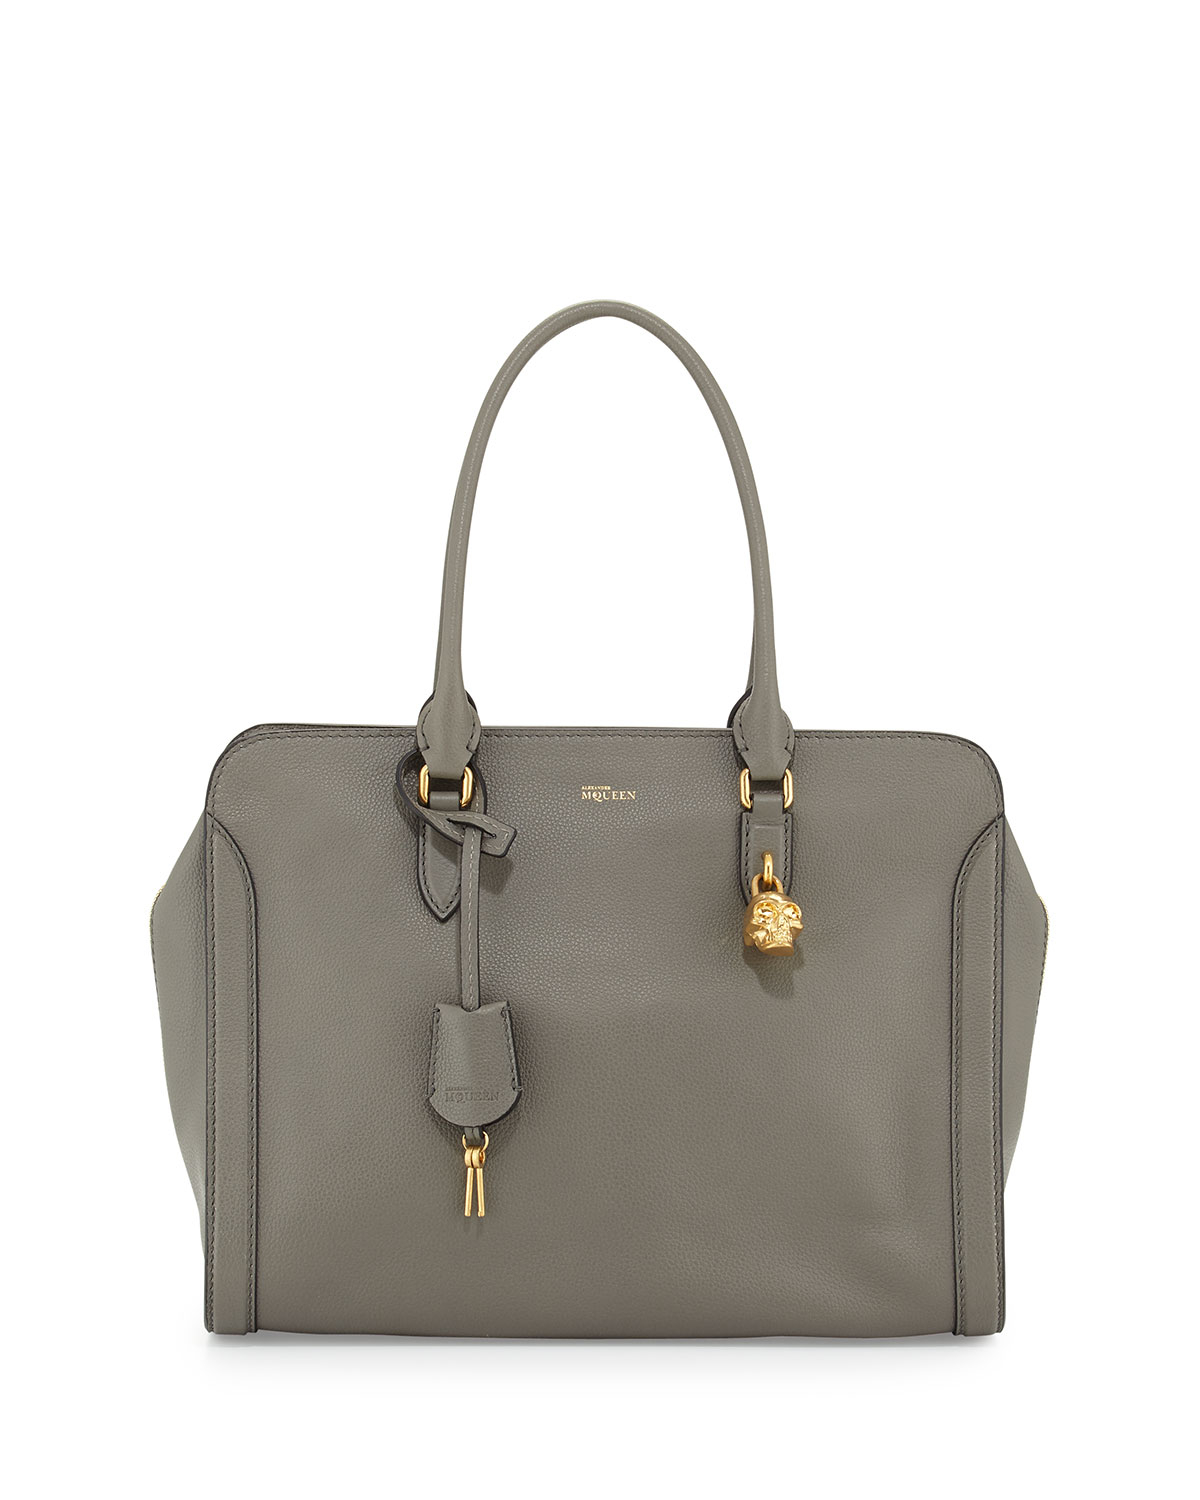 Alexander McQueen bags. Alexander Mcqueen women's leather handbag ...